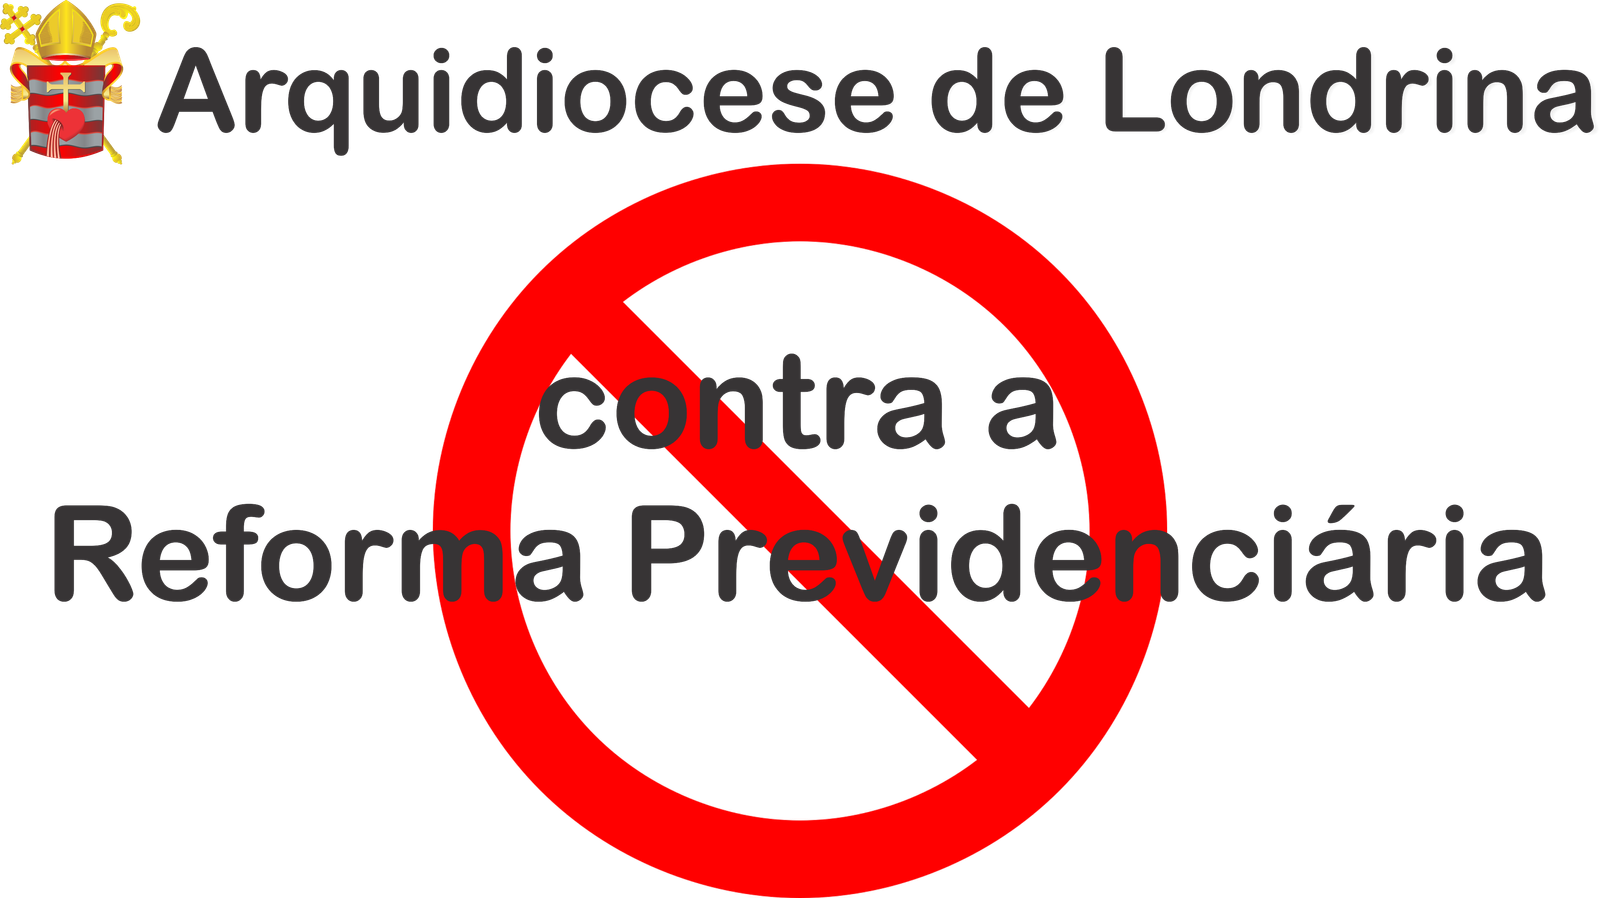 Nota da Arquidiocese  de Londrina contra a Reforma Previdenciária